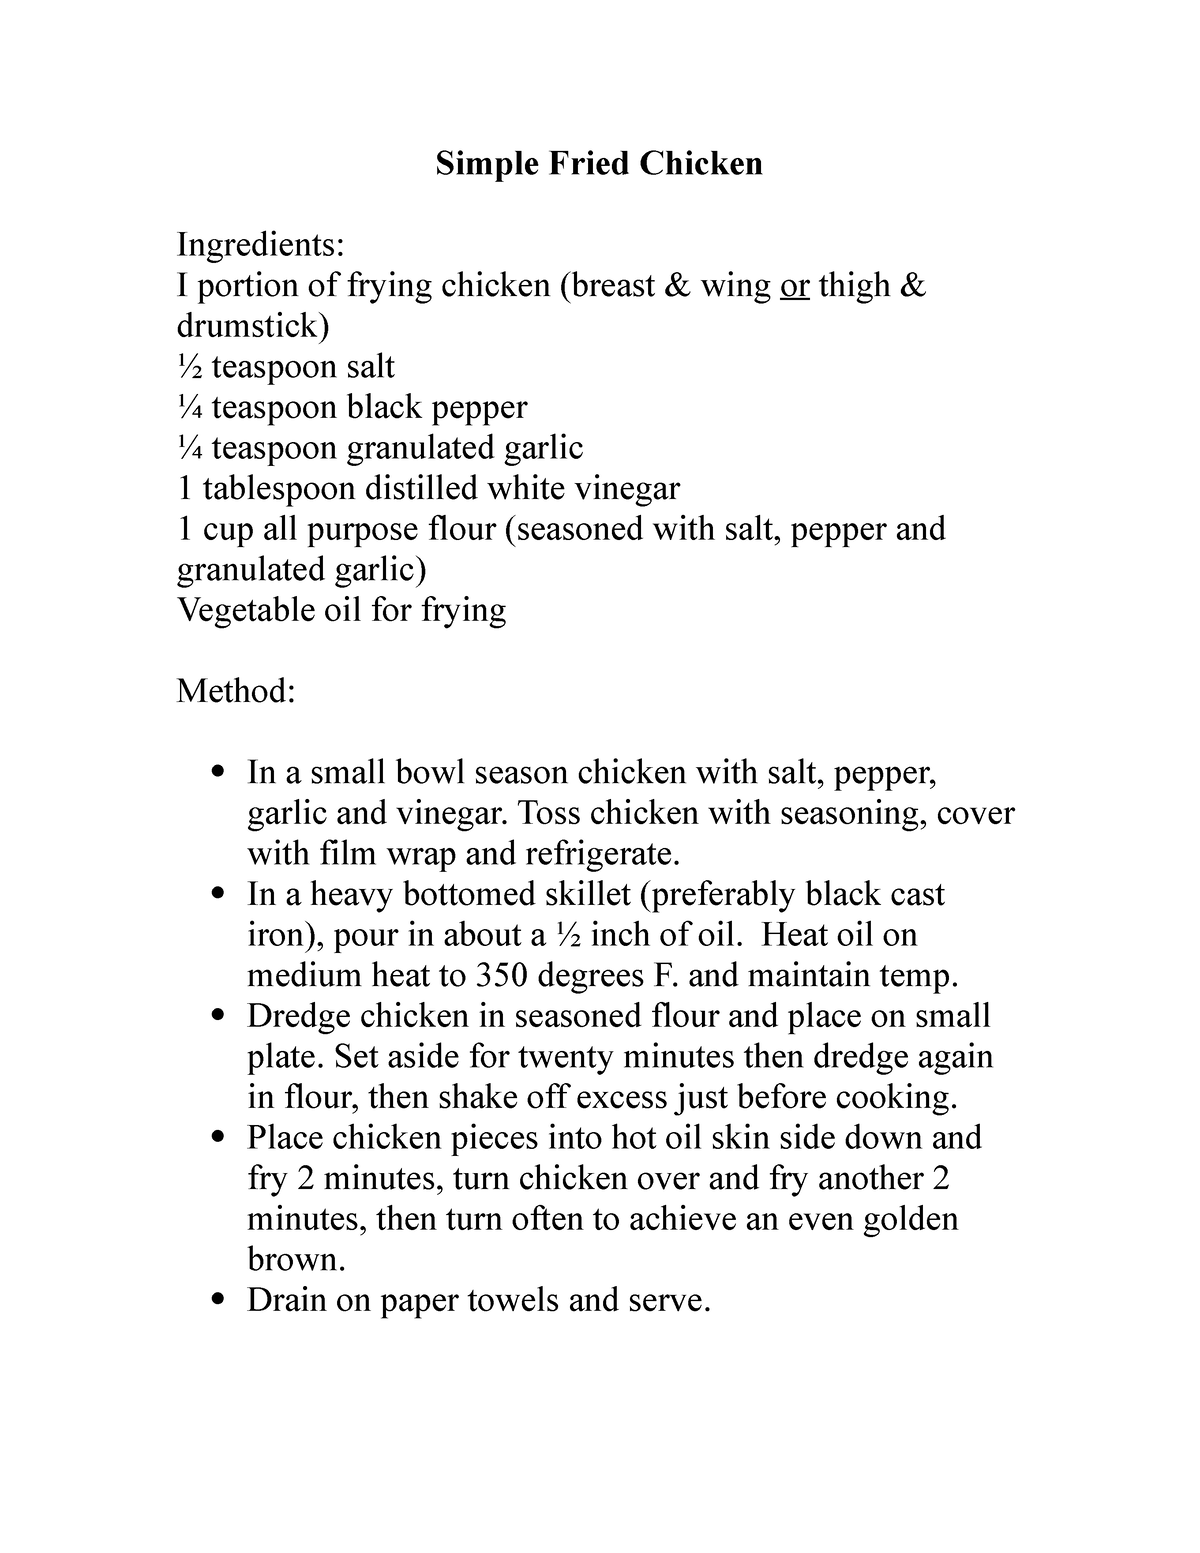 Simple Fried Chicken-1 - Simple Fried Chicken Ingredients: I portion of ...